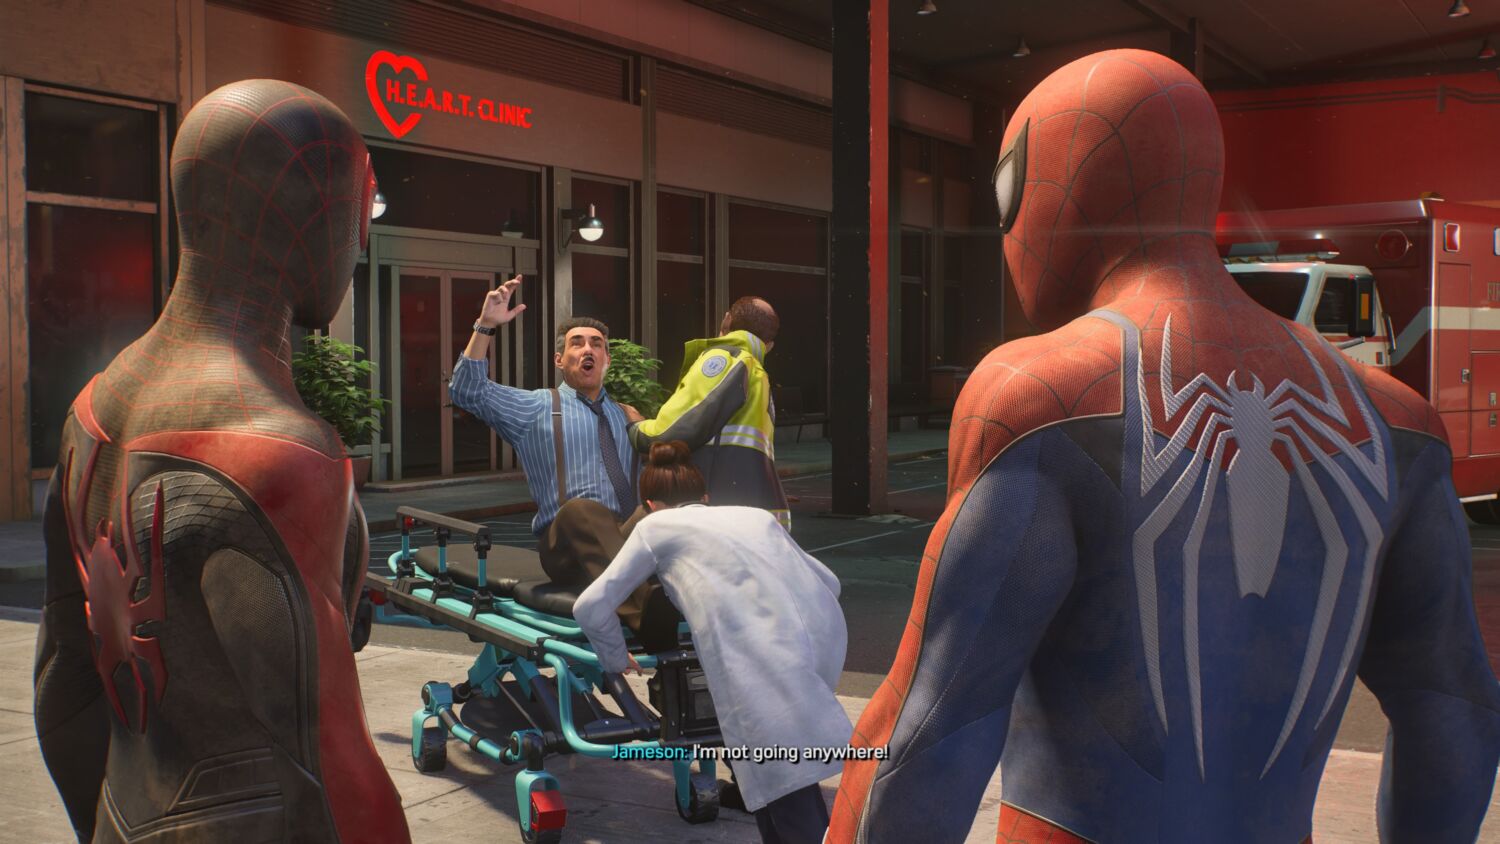 Ultimate Spiderman  Playstation 2 - Geek-Is-Us